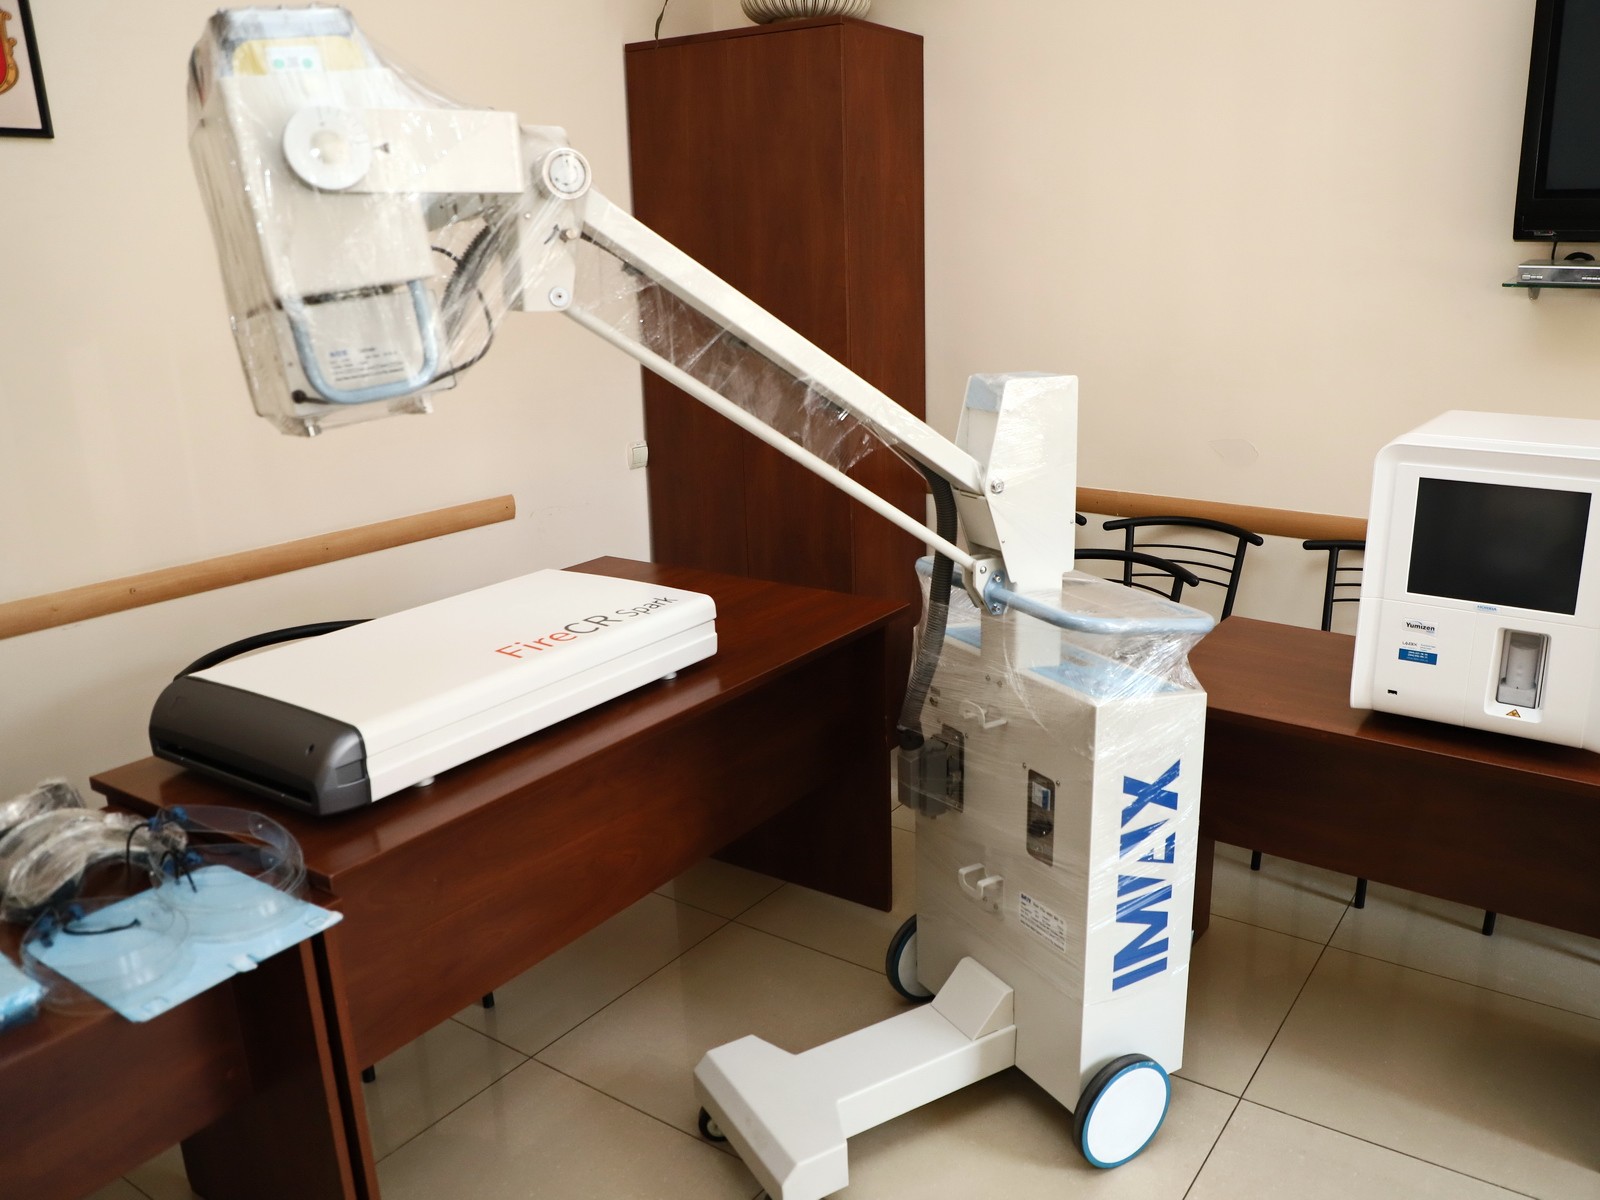 Мобільний рентгенкабінет працюватиме в Ужгороді наступні 2 тижні – 16–27 травня.

